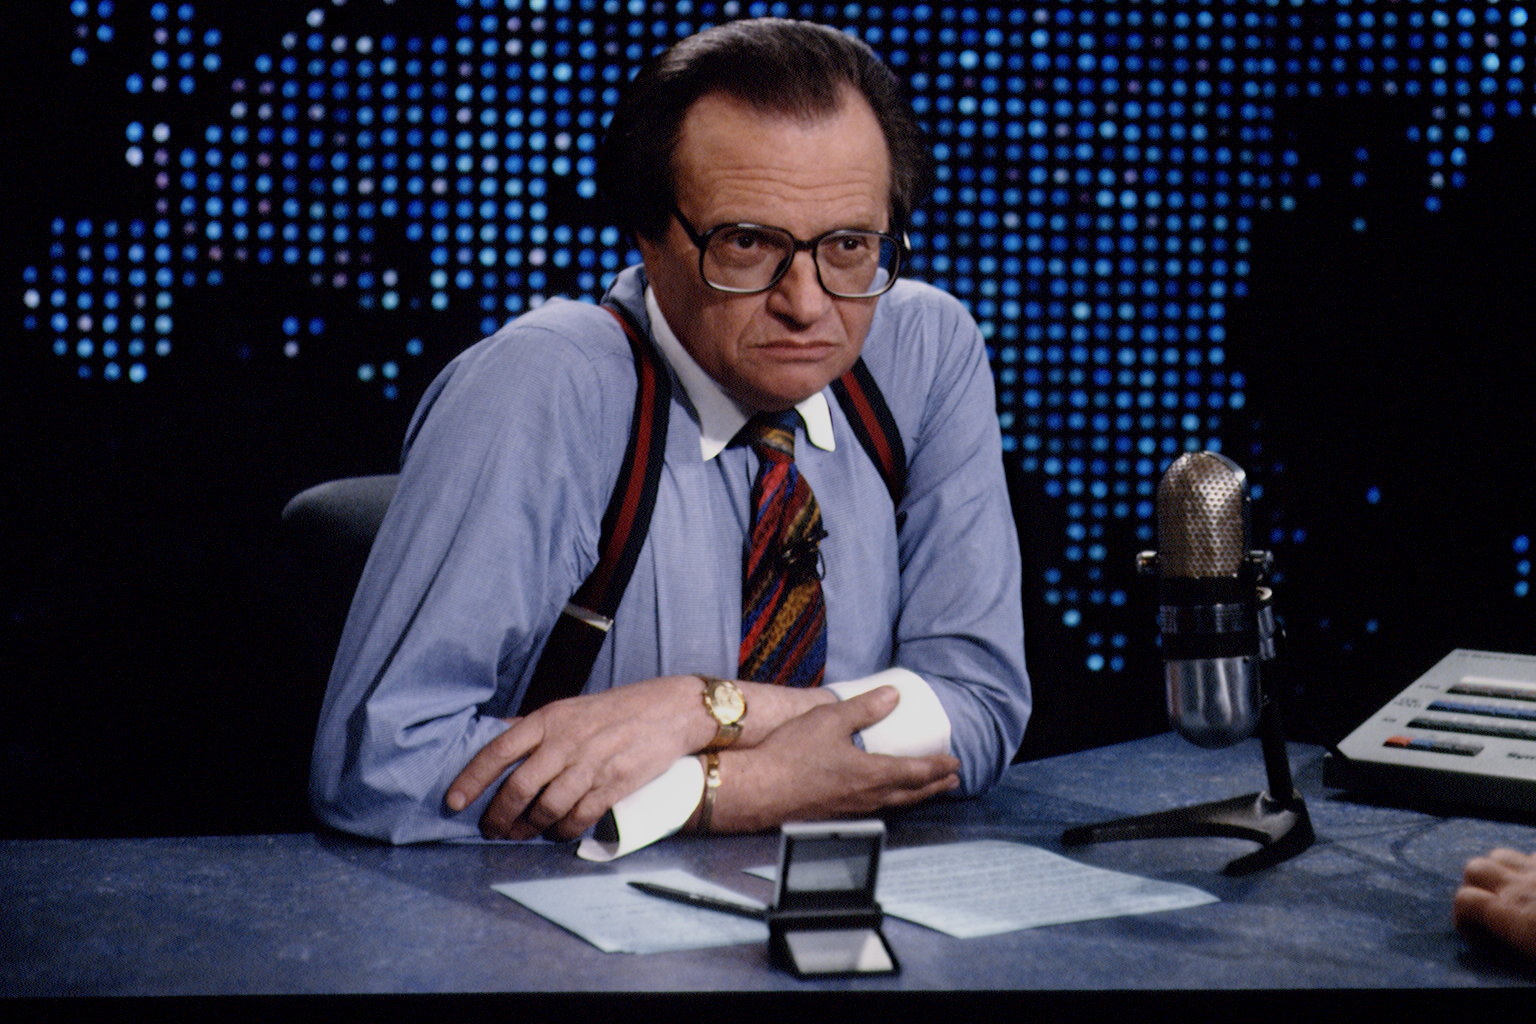 Larry King, legendary Jewish TV interviewer, dies at 87